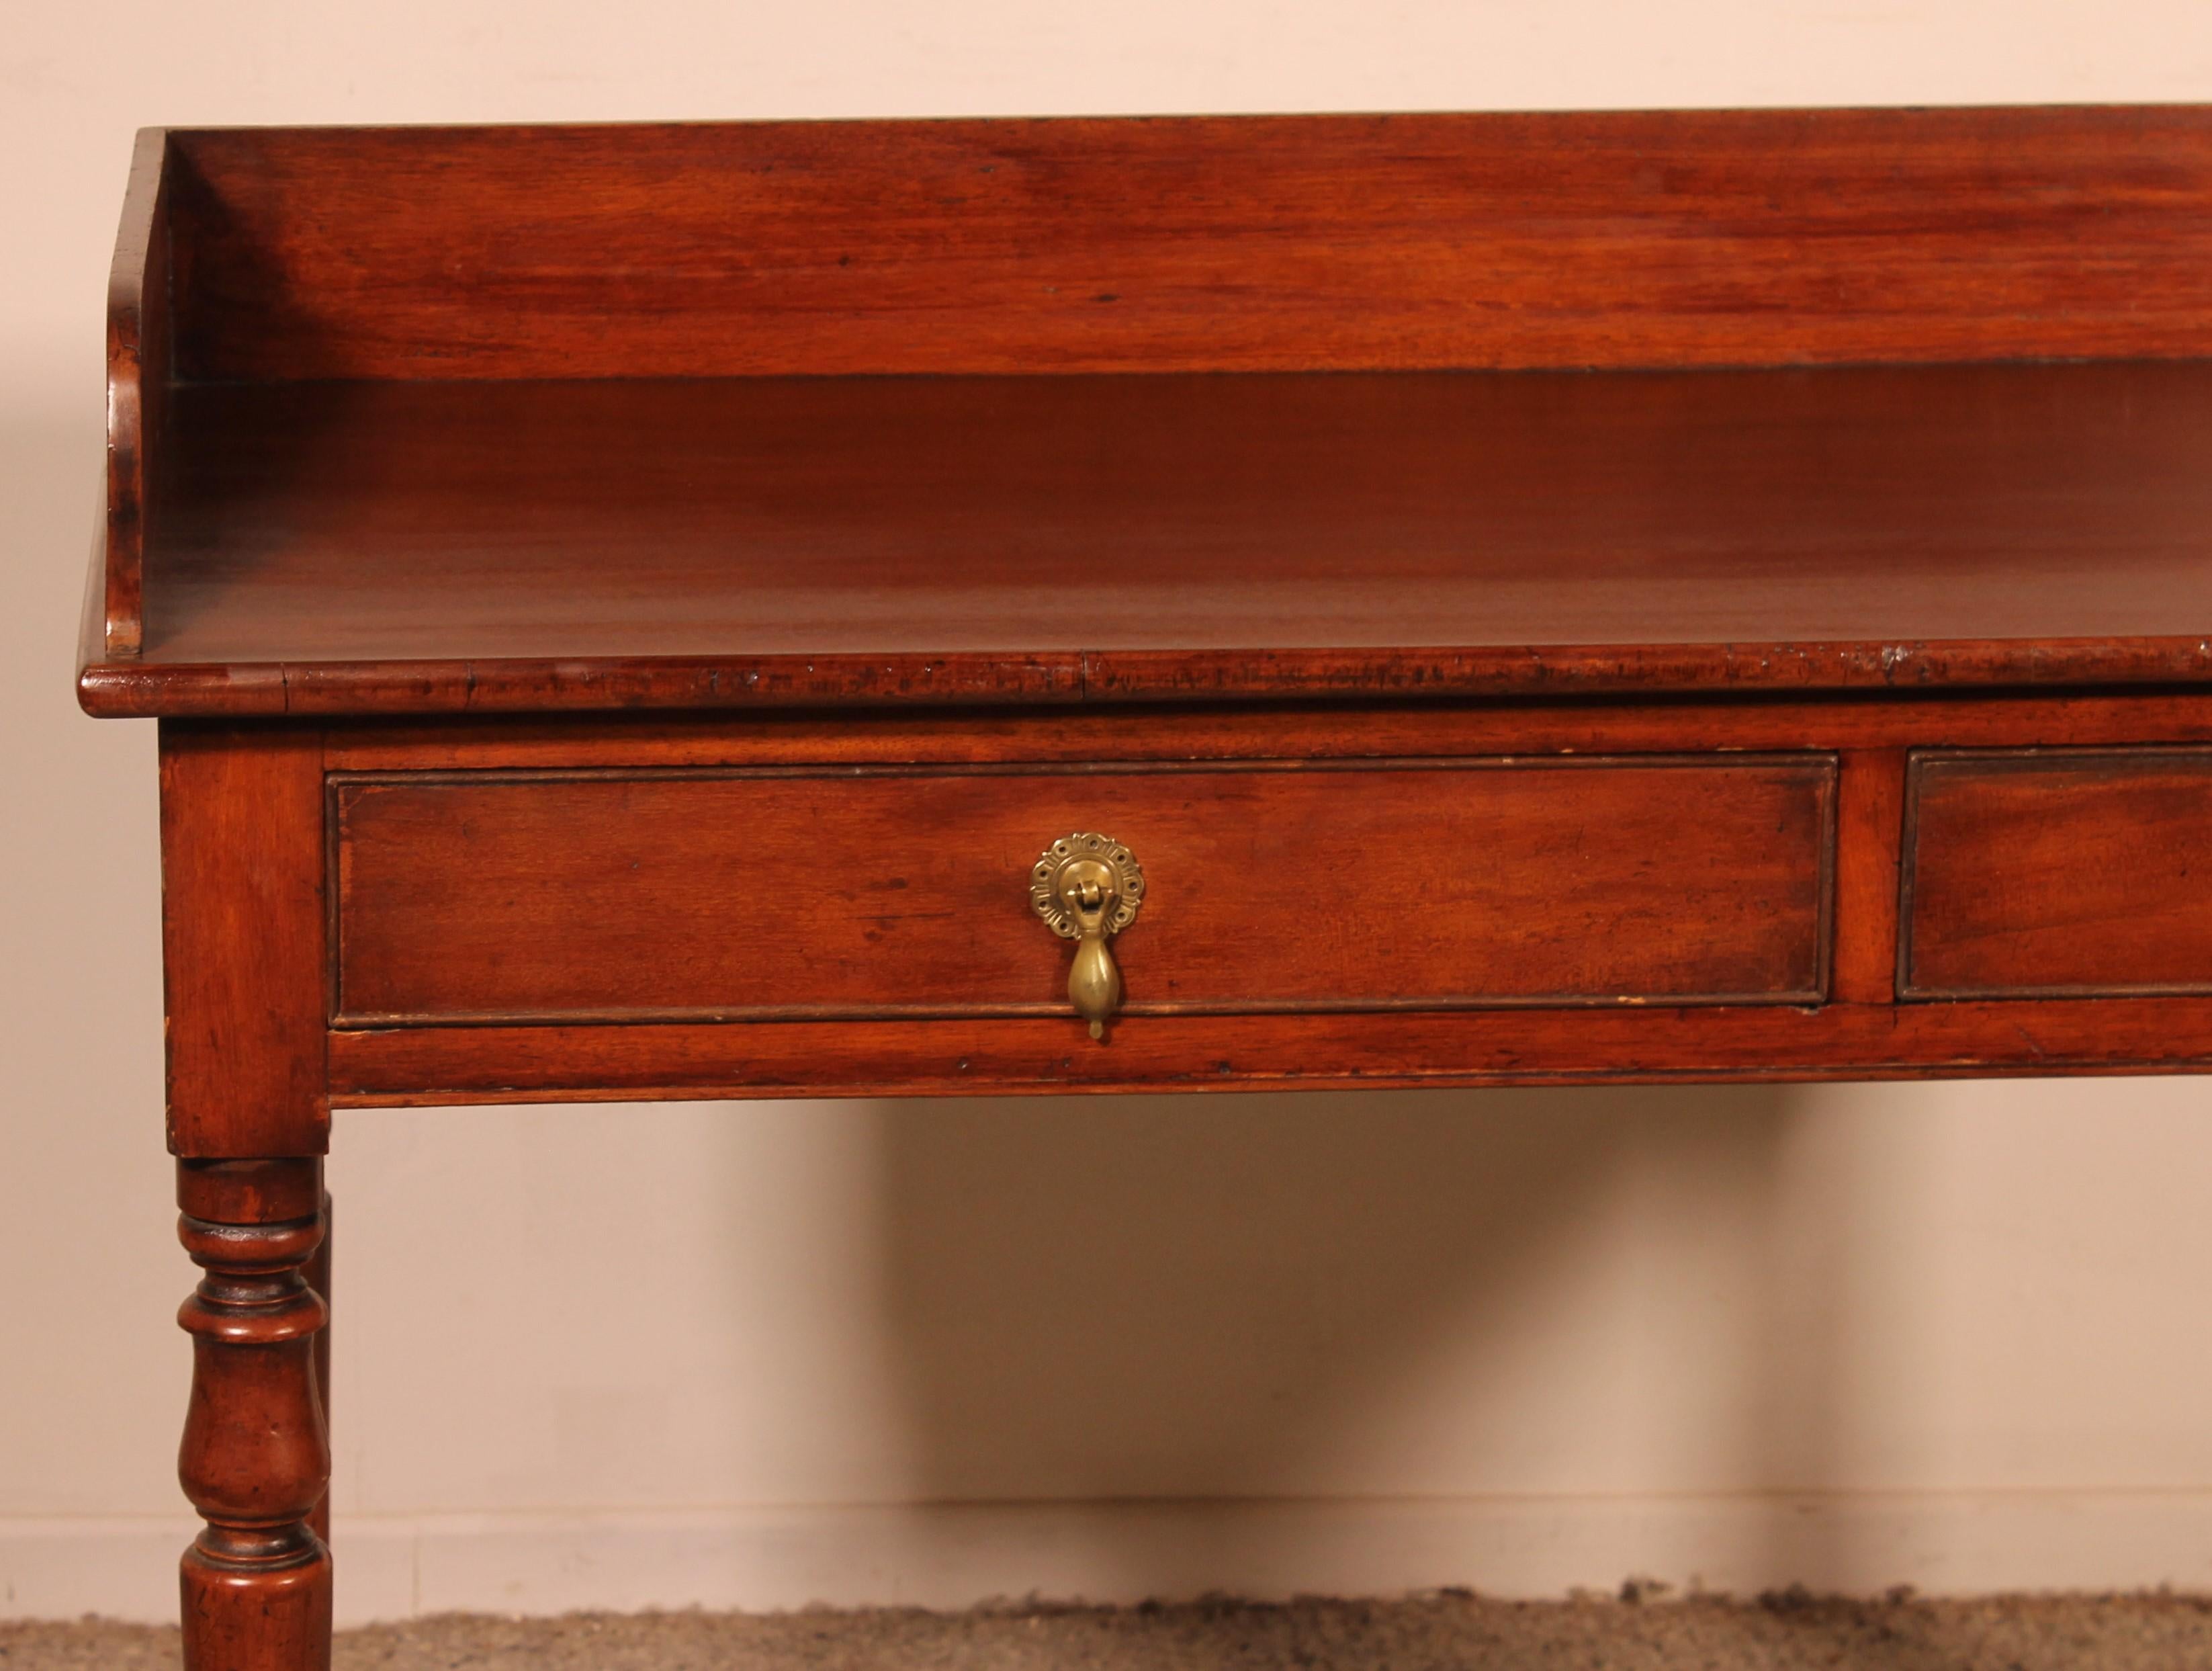 ein feiner Mahagoni-Schreibtisch mit zwei Schubladen aus dem 19. Jahrhundert aus England

Eleganter Schreibtisch mit zwei Schubladen im Gürtel, der vollständig aus massivem Mahagoni besteht
Der Schreibtisch ruht auf einem gedrechselten Sockel
 Der